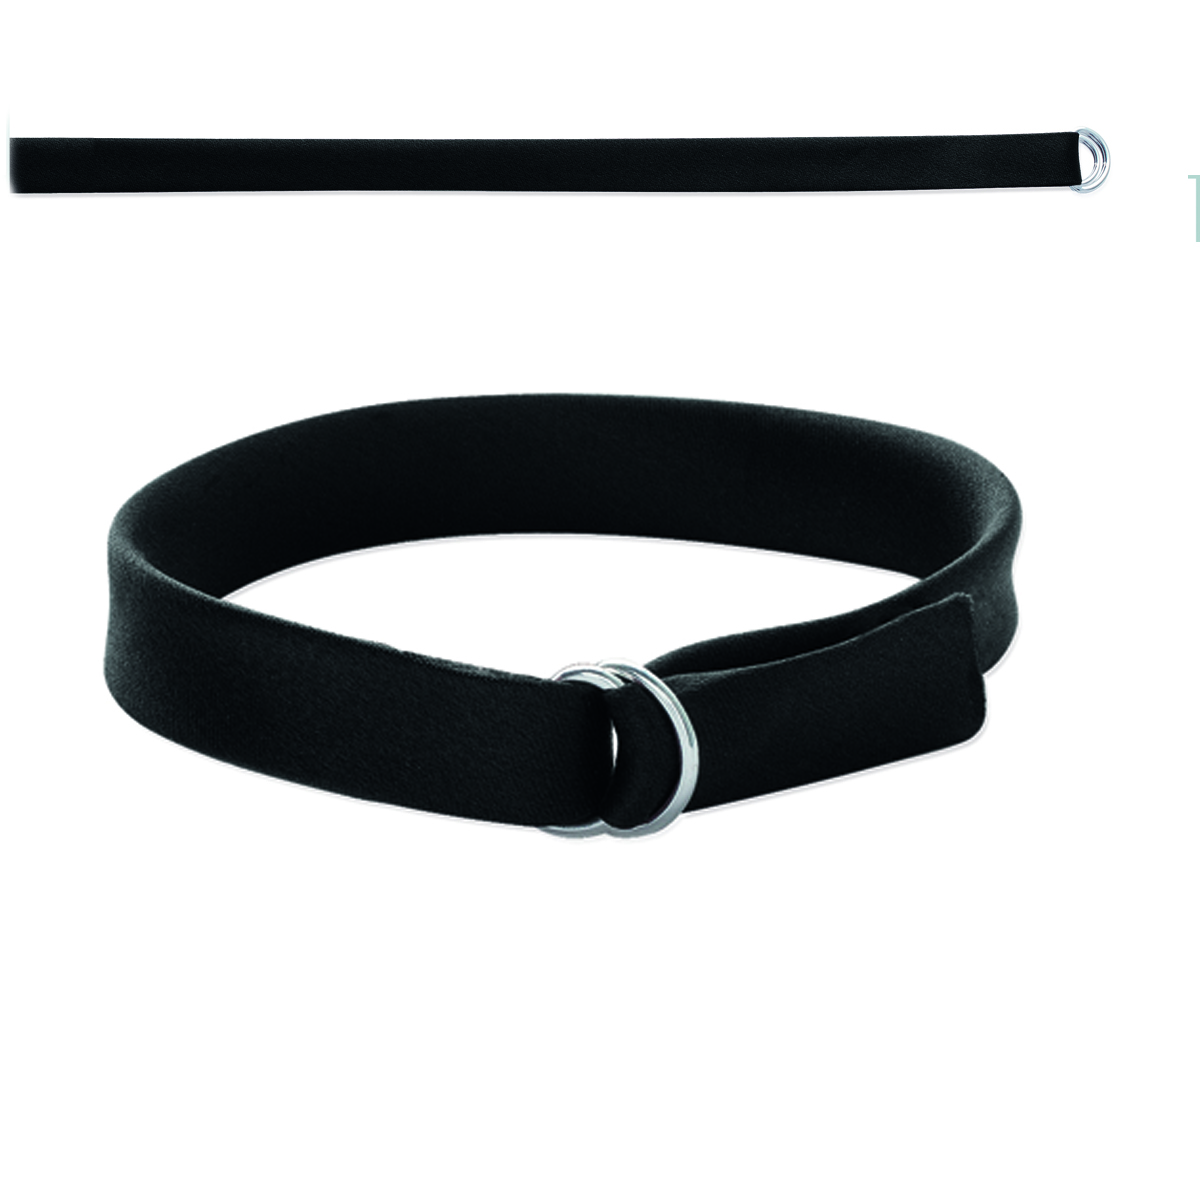 Bracelet \'Satin\' noir - 1 cm - [I8057]